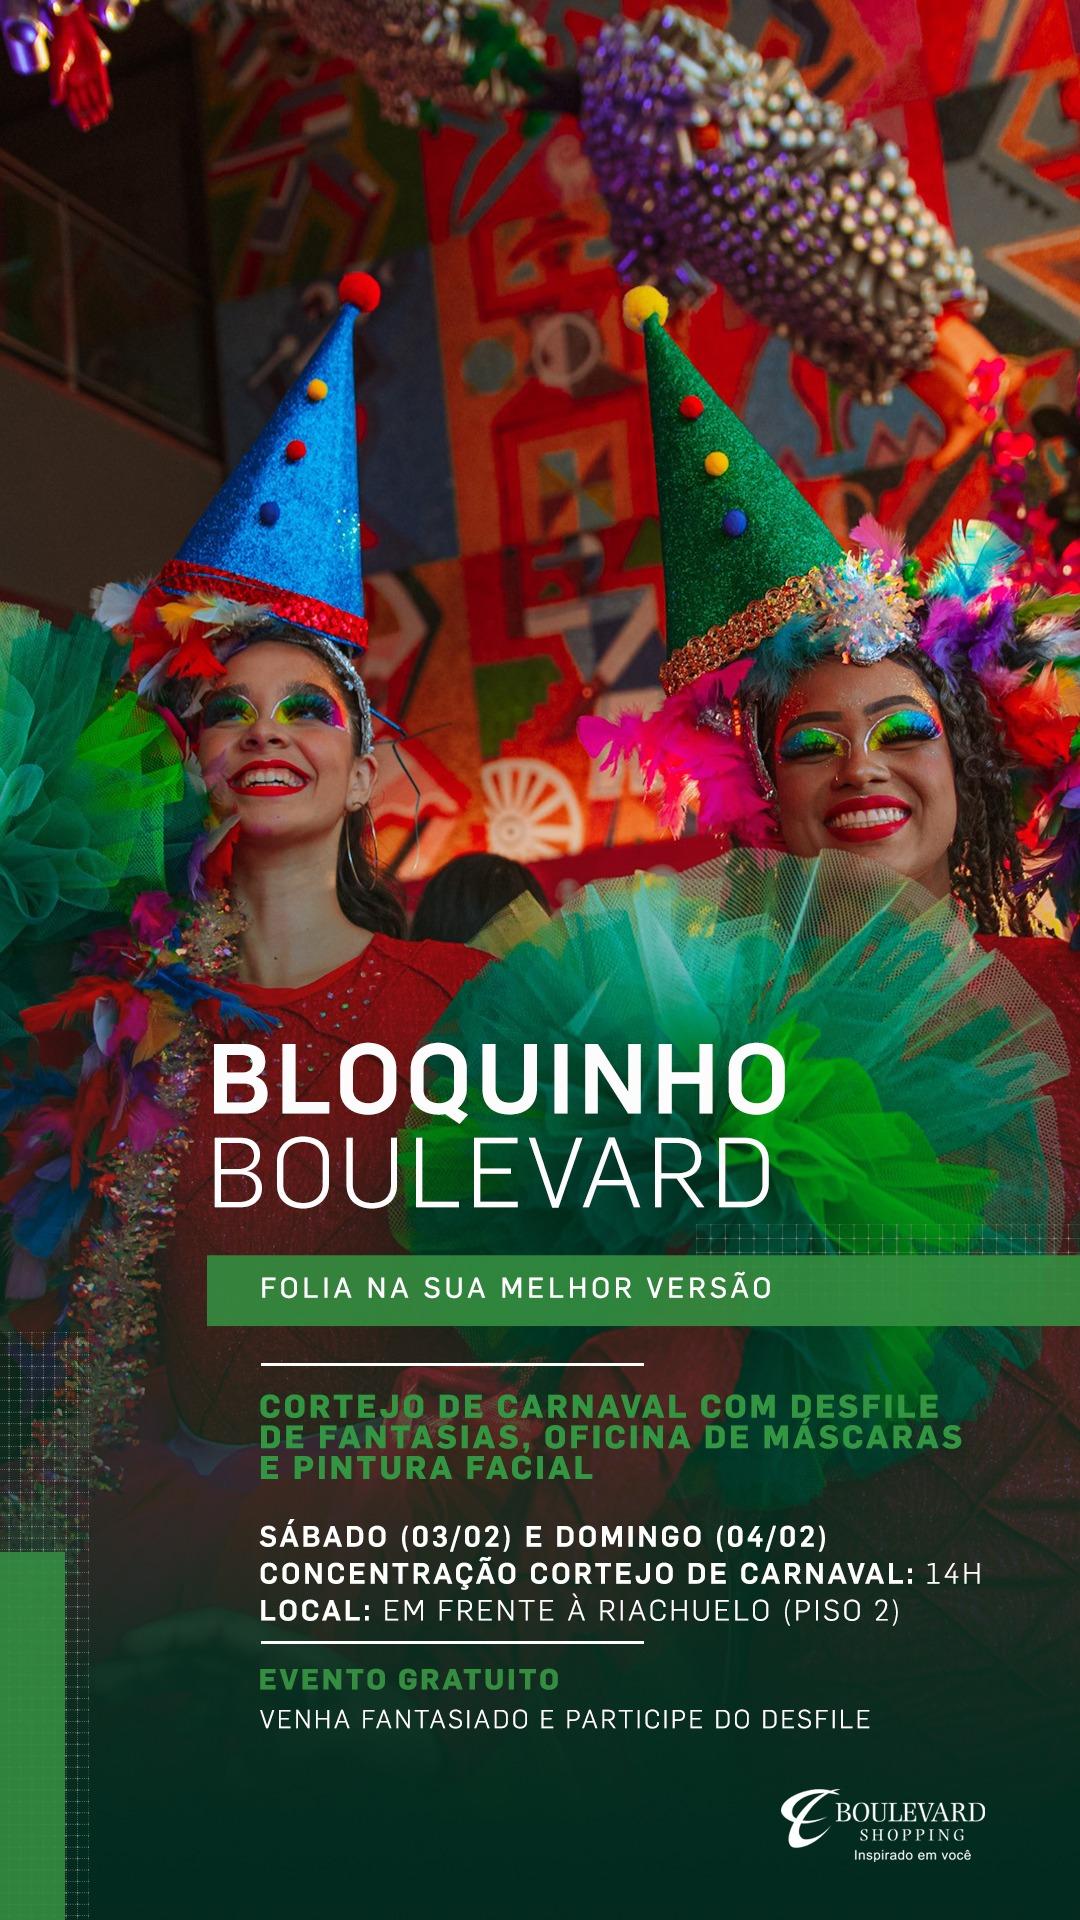 Boulevard Shopping realiza Bailinho de Carnaval com desfile de fantasias nos dias 3 e 4 de fevereiro